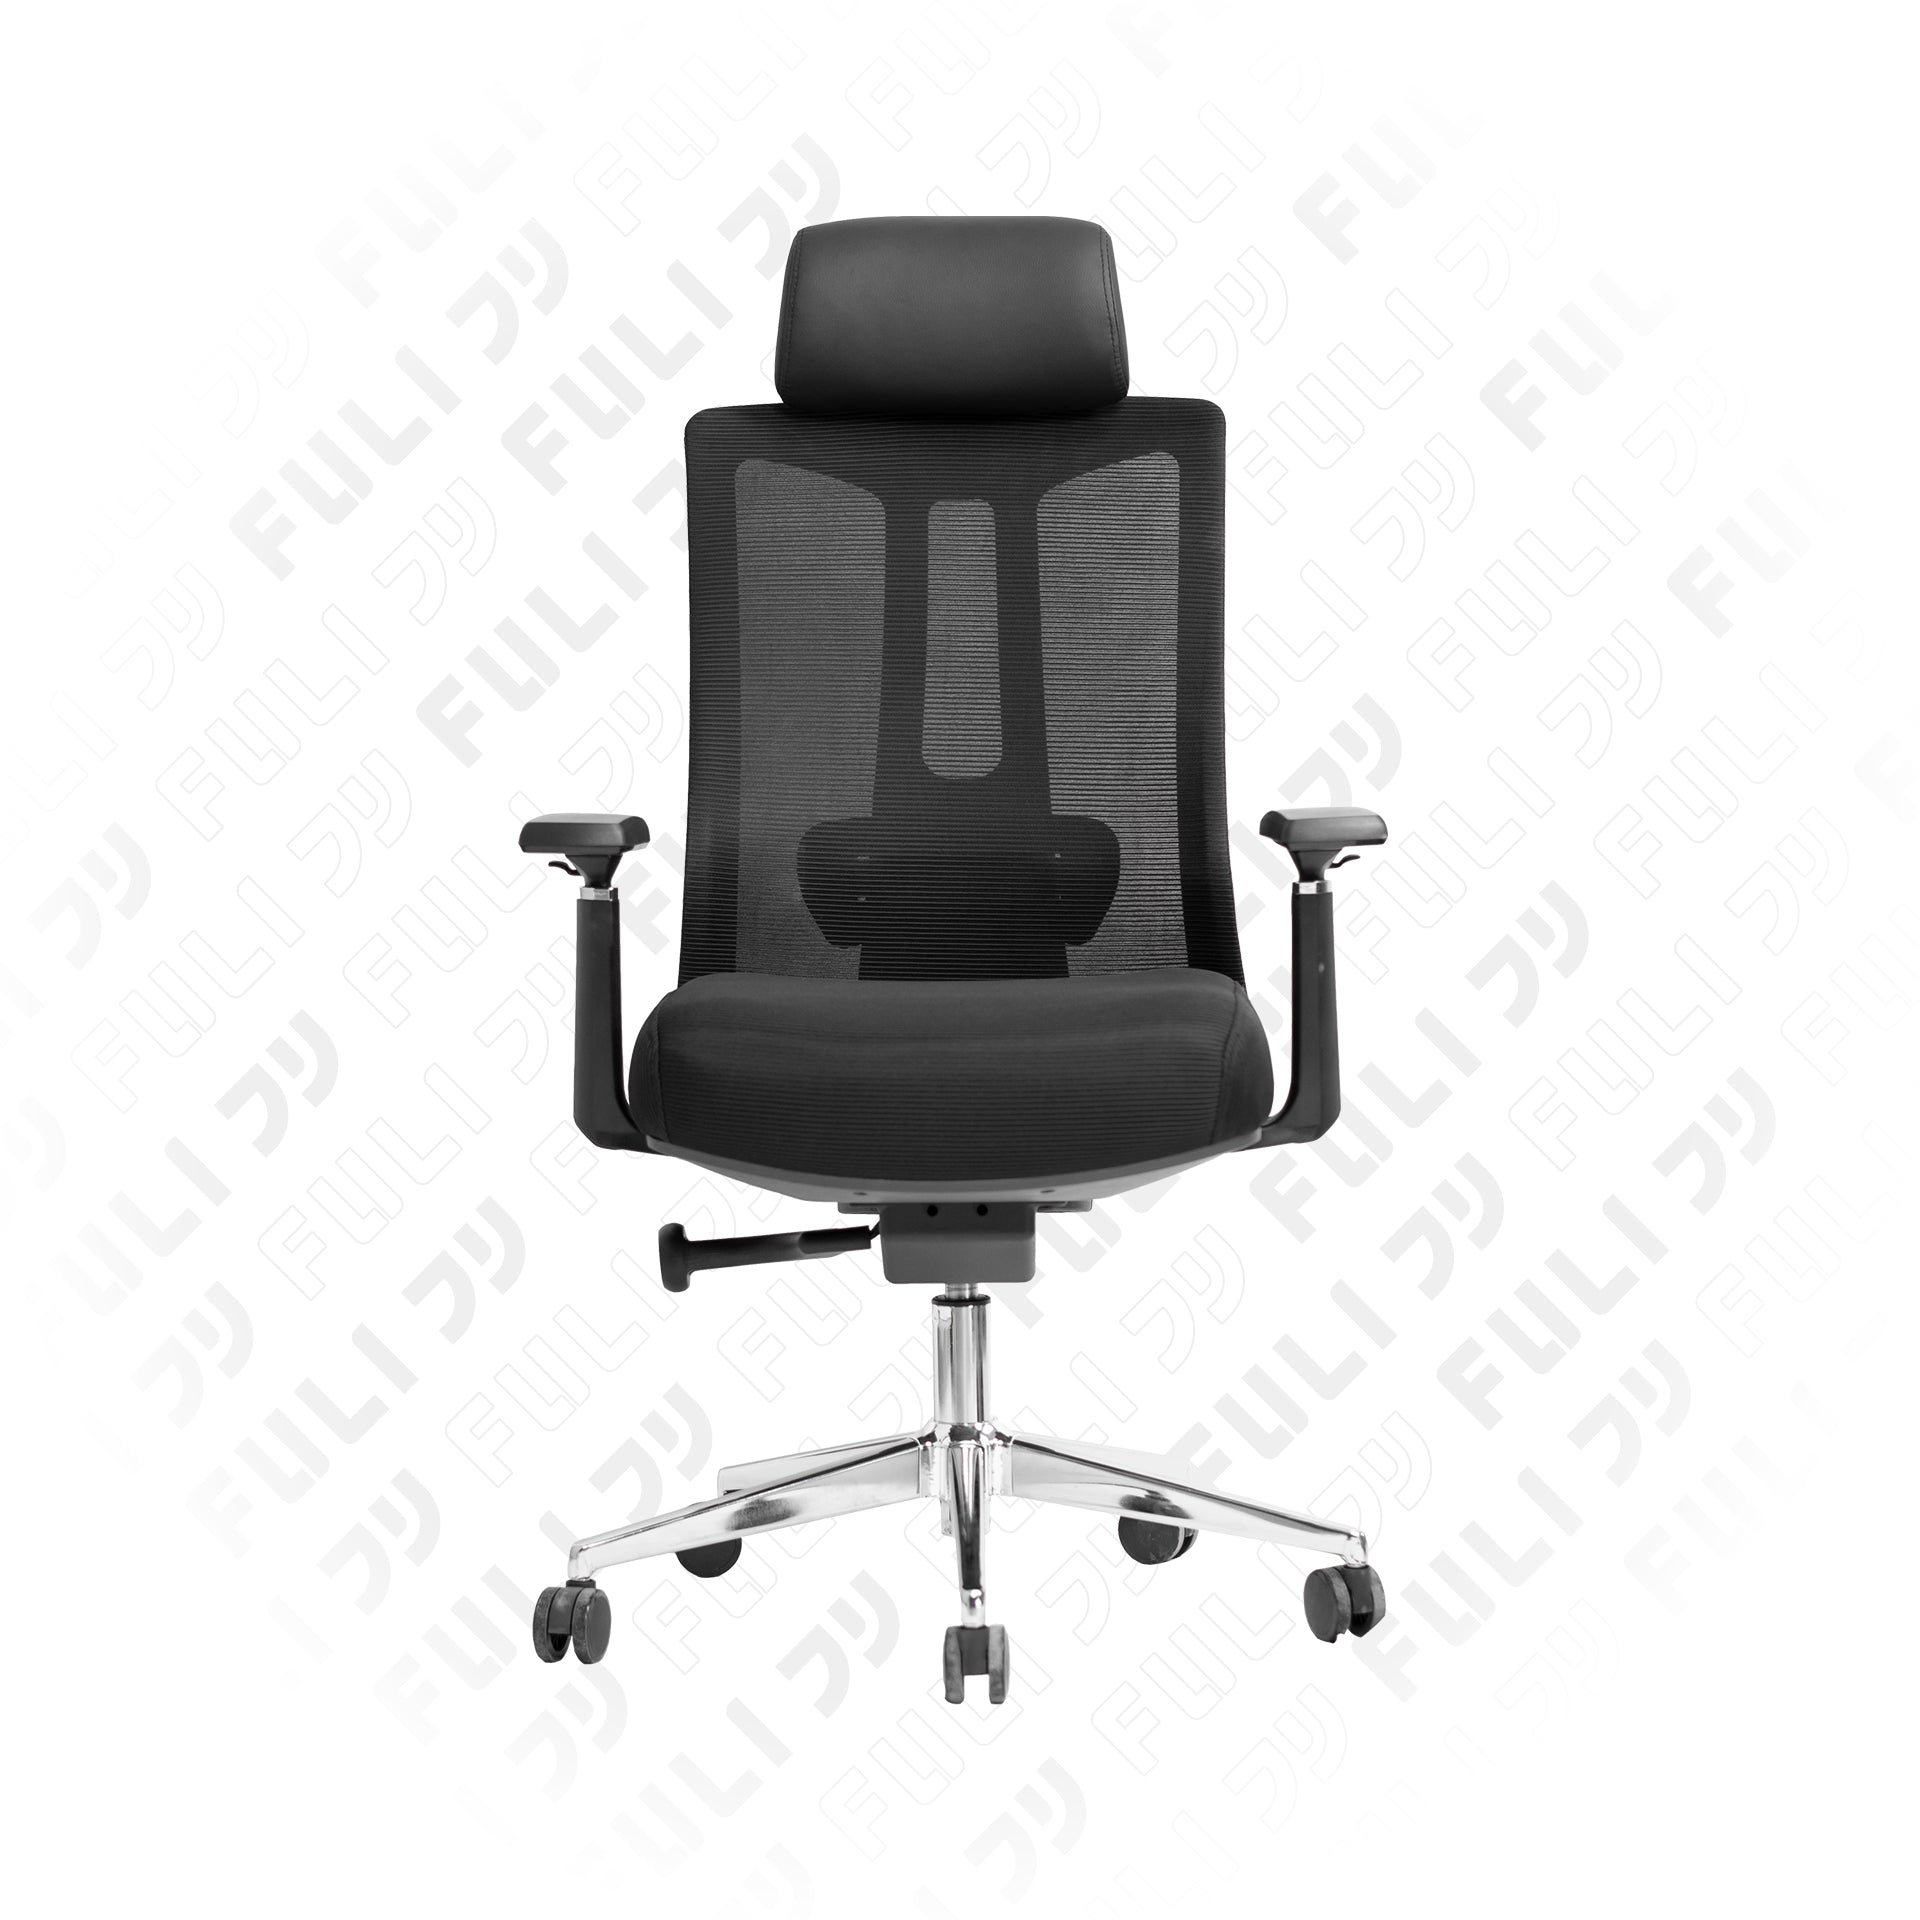 เก้าอี้ทำงานเพื่อสุขภาพ รุ่น M9 - สีดำ | FULI M9 Expert Posture ErgoMesh Office Chair - Black